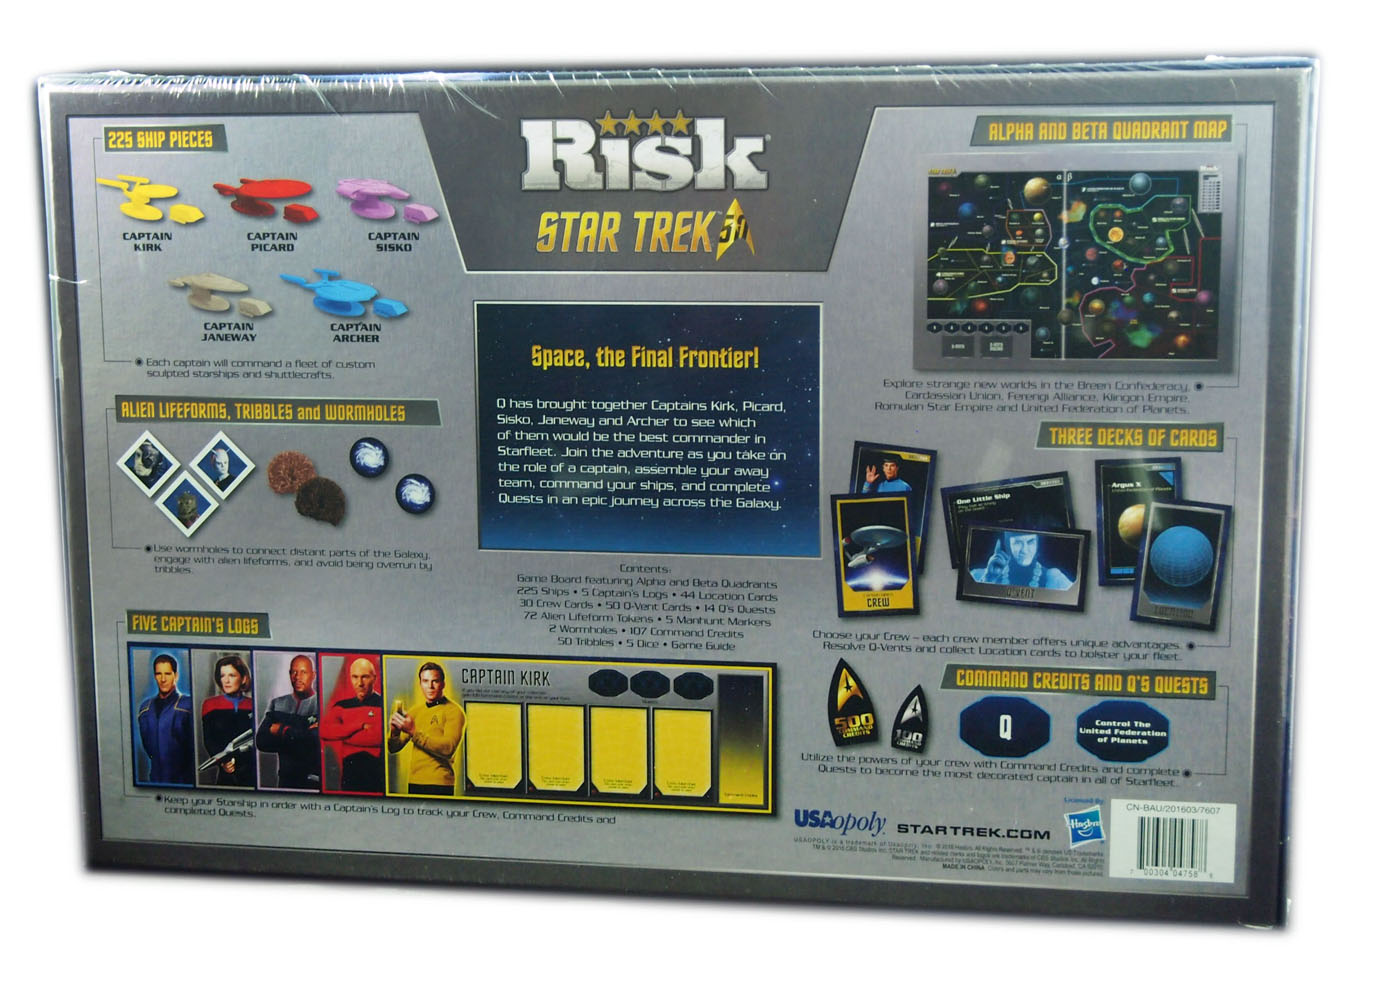 RISK Star Trek Rear Box Cover